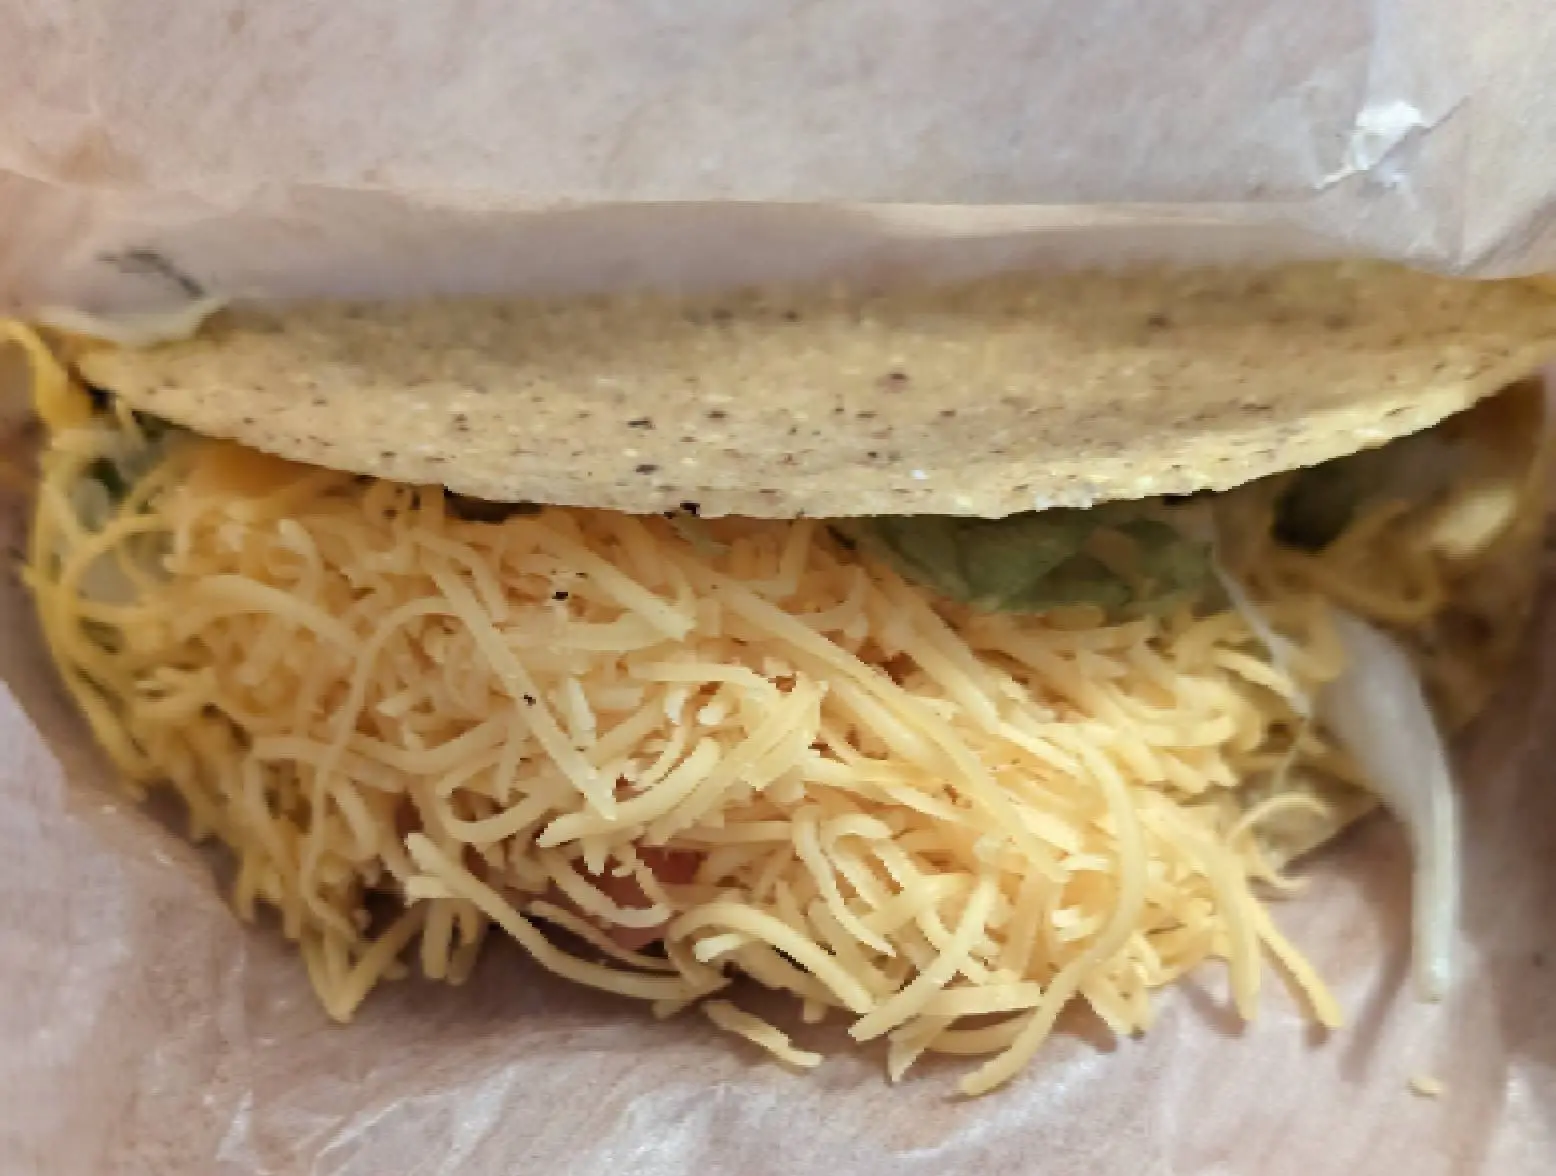 del taco taco in wrapper